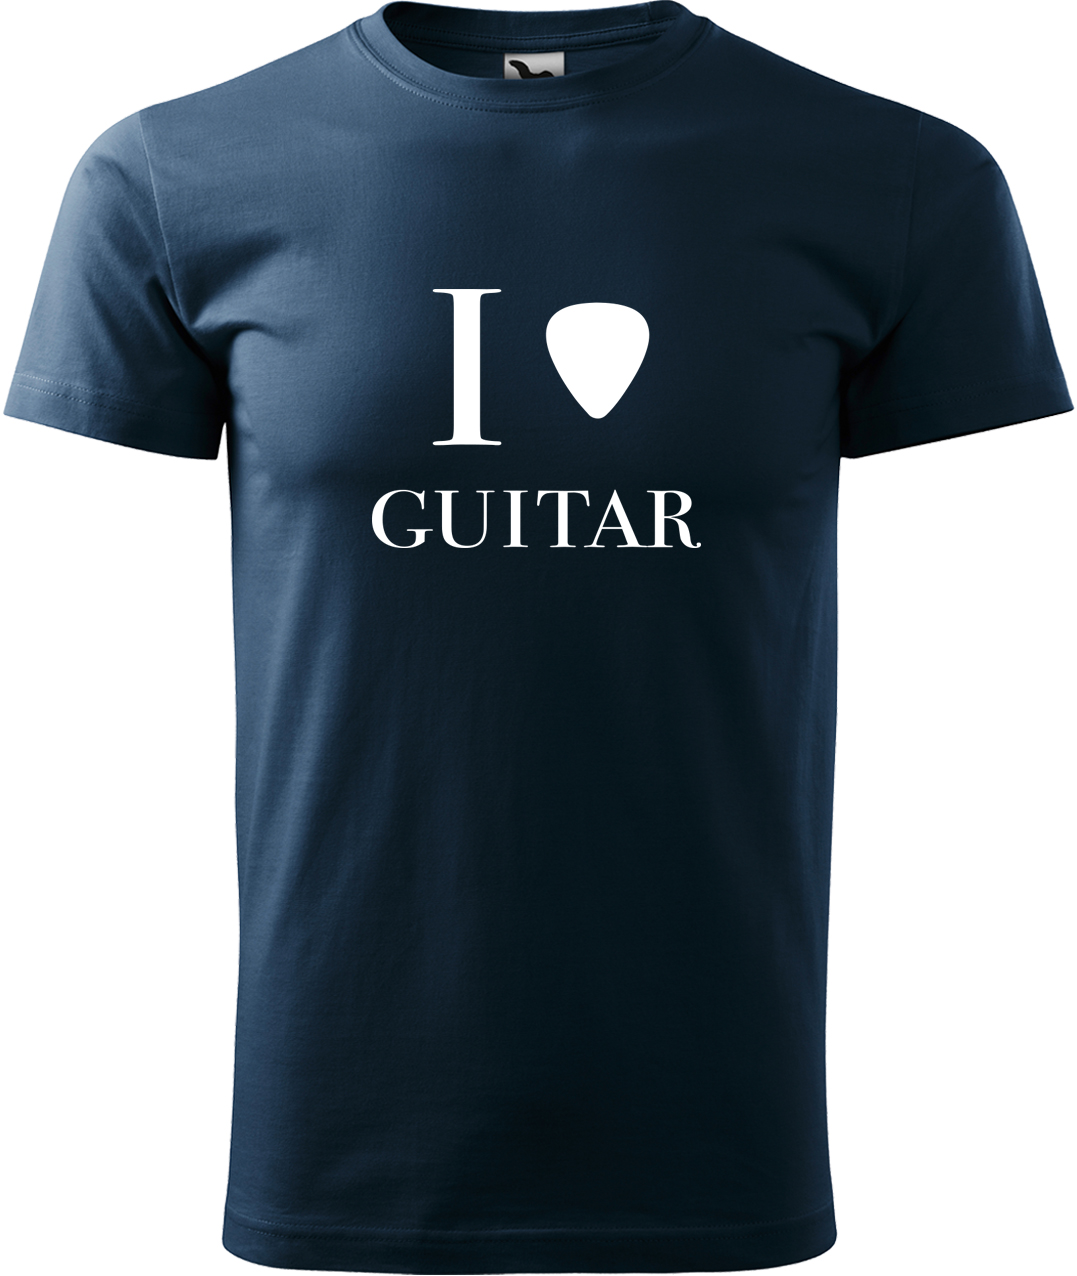 Pánské tričko s kytarou - I love guitar Velikost: L, Barva: Námořní modrá (02), Střih: pánský